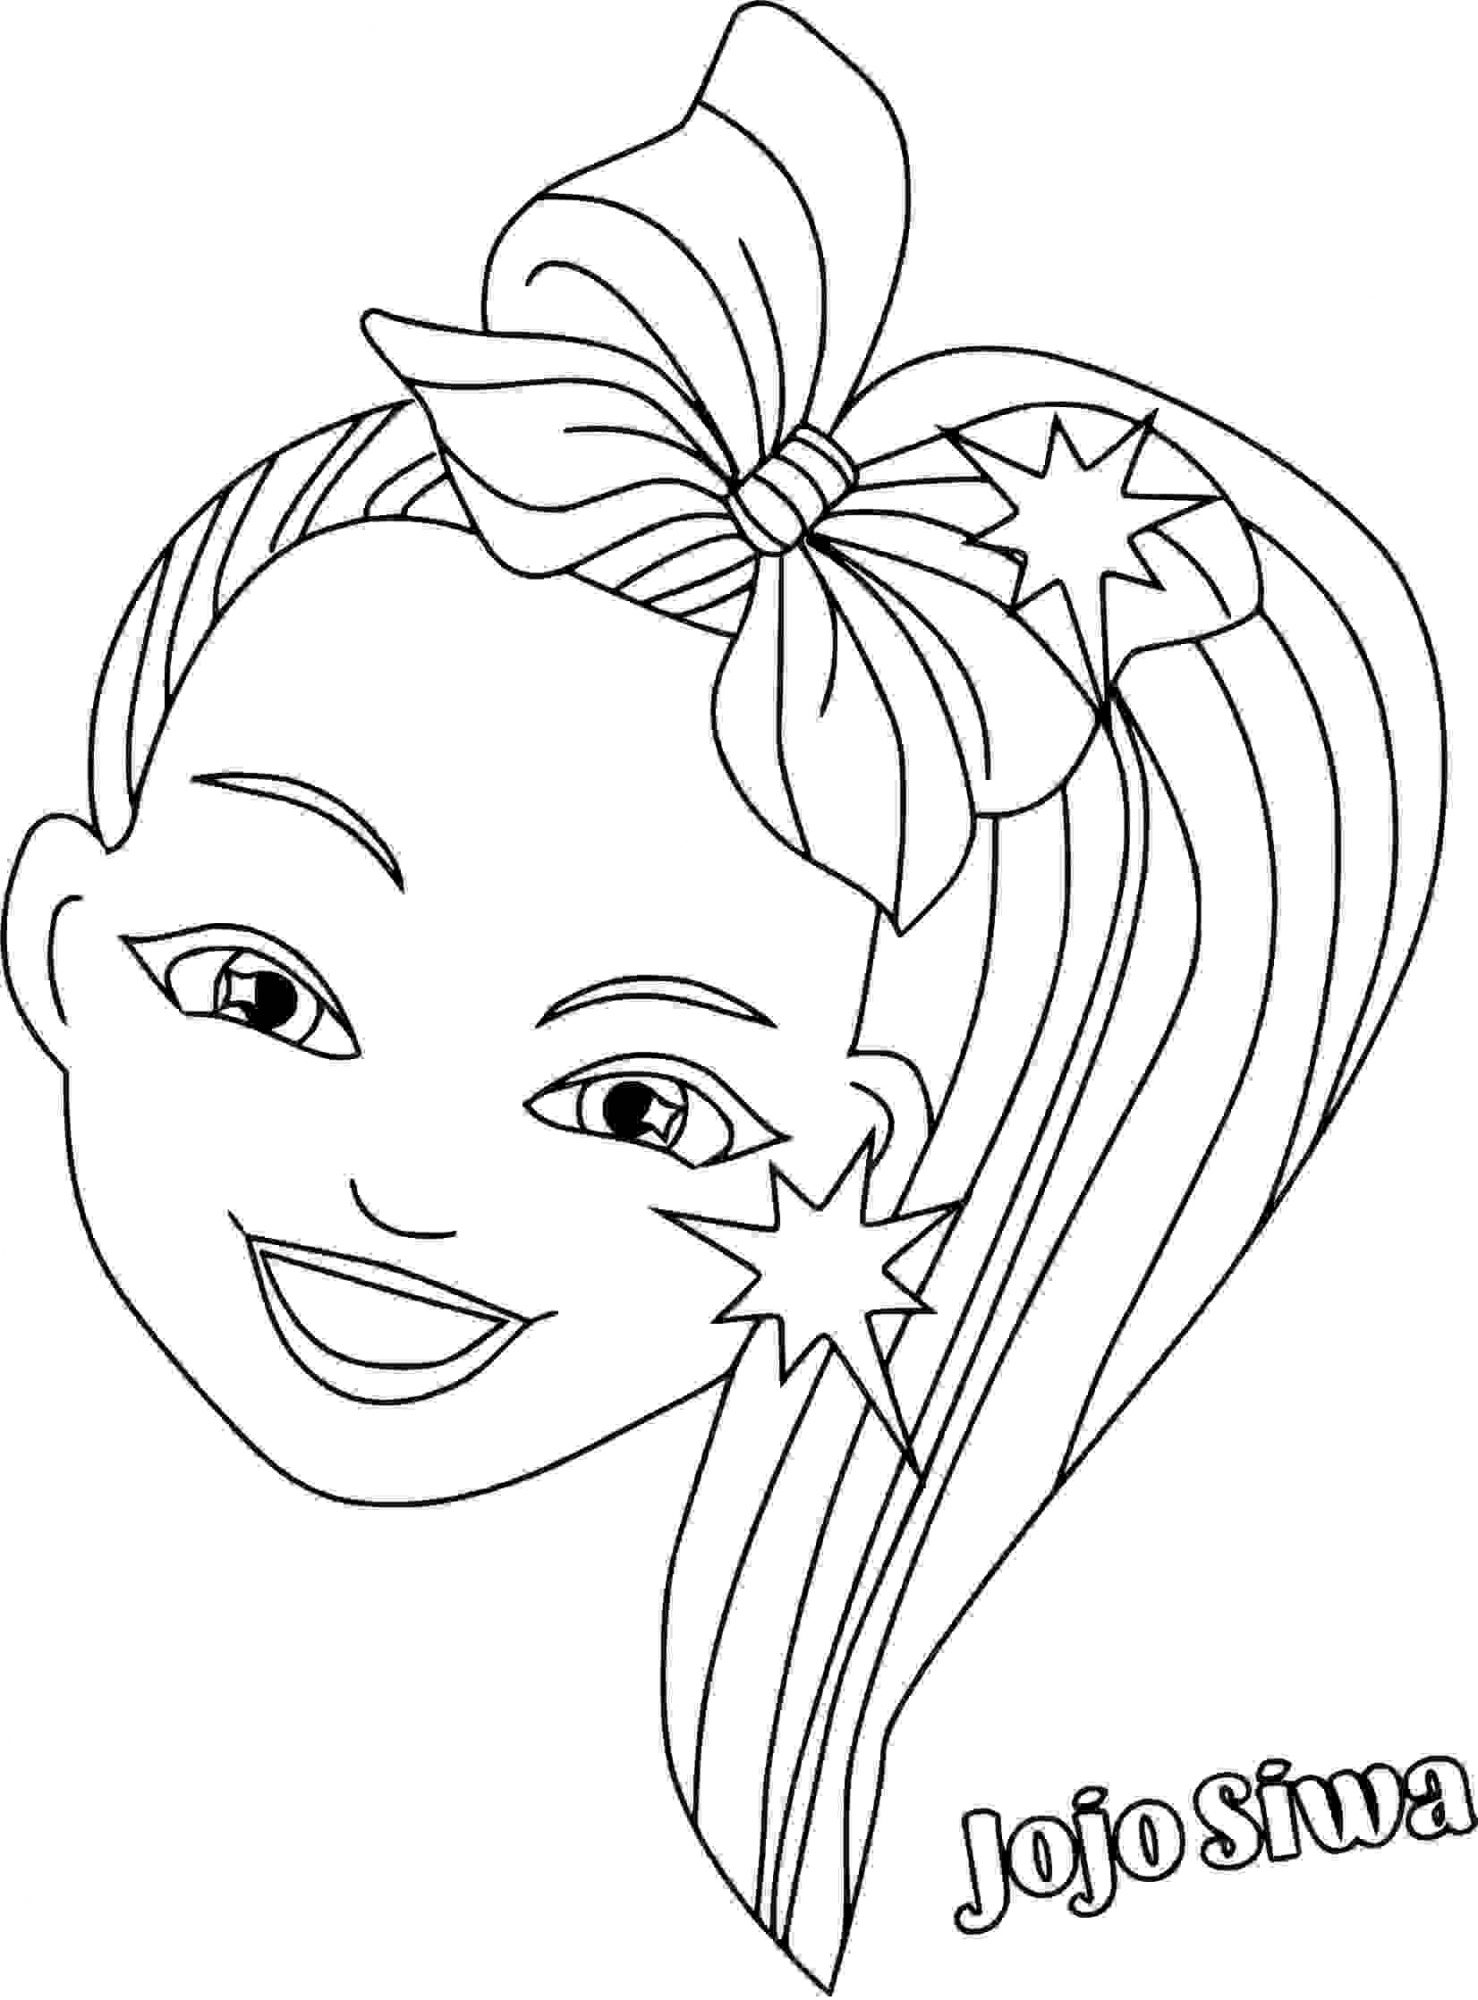 رأس جوجو سيوا مع صفحة تلوين الشعر الملونة